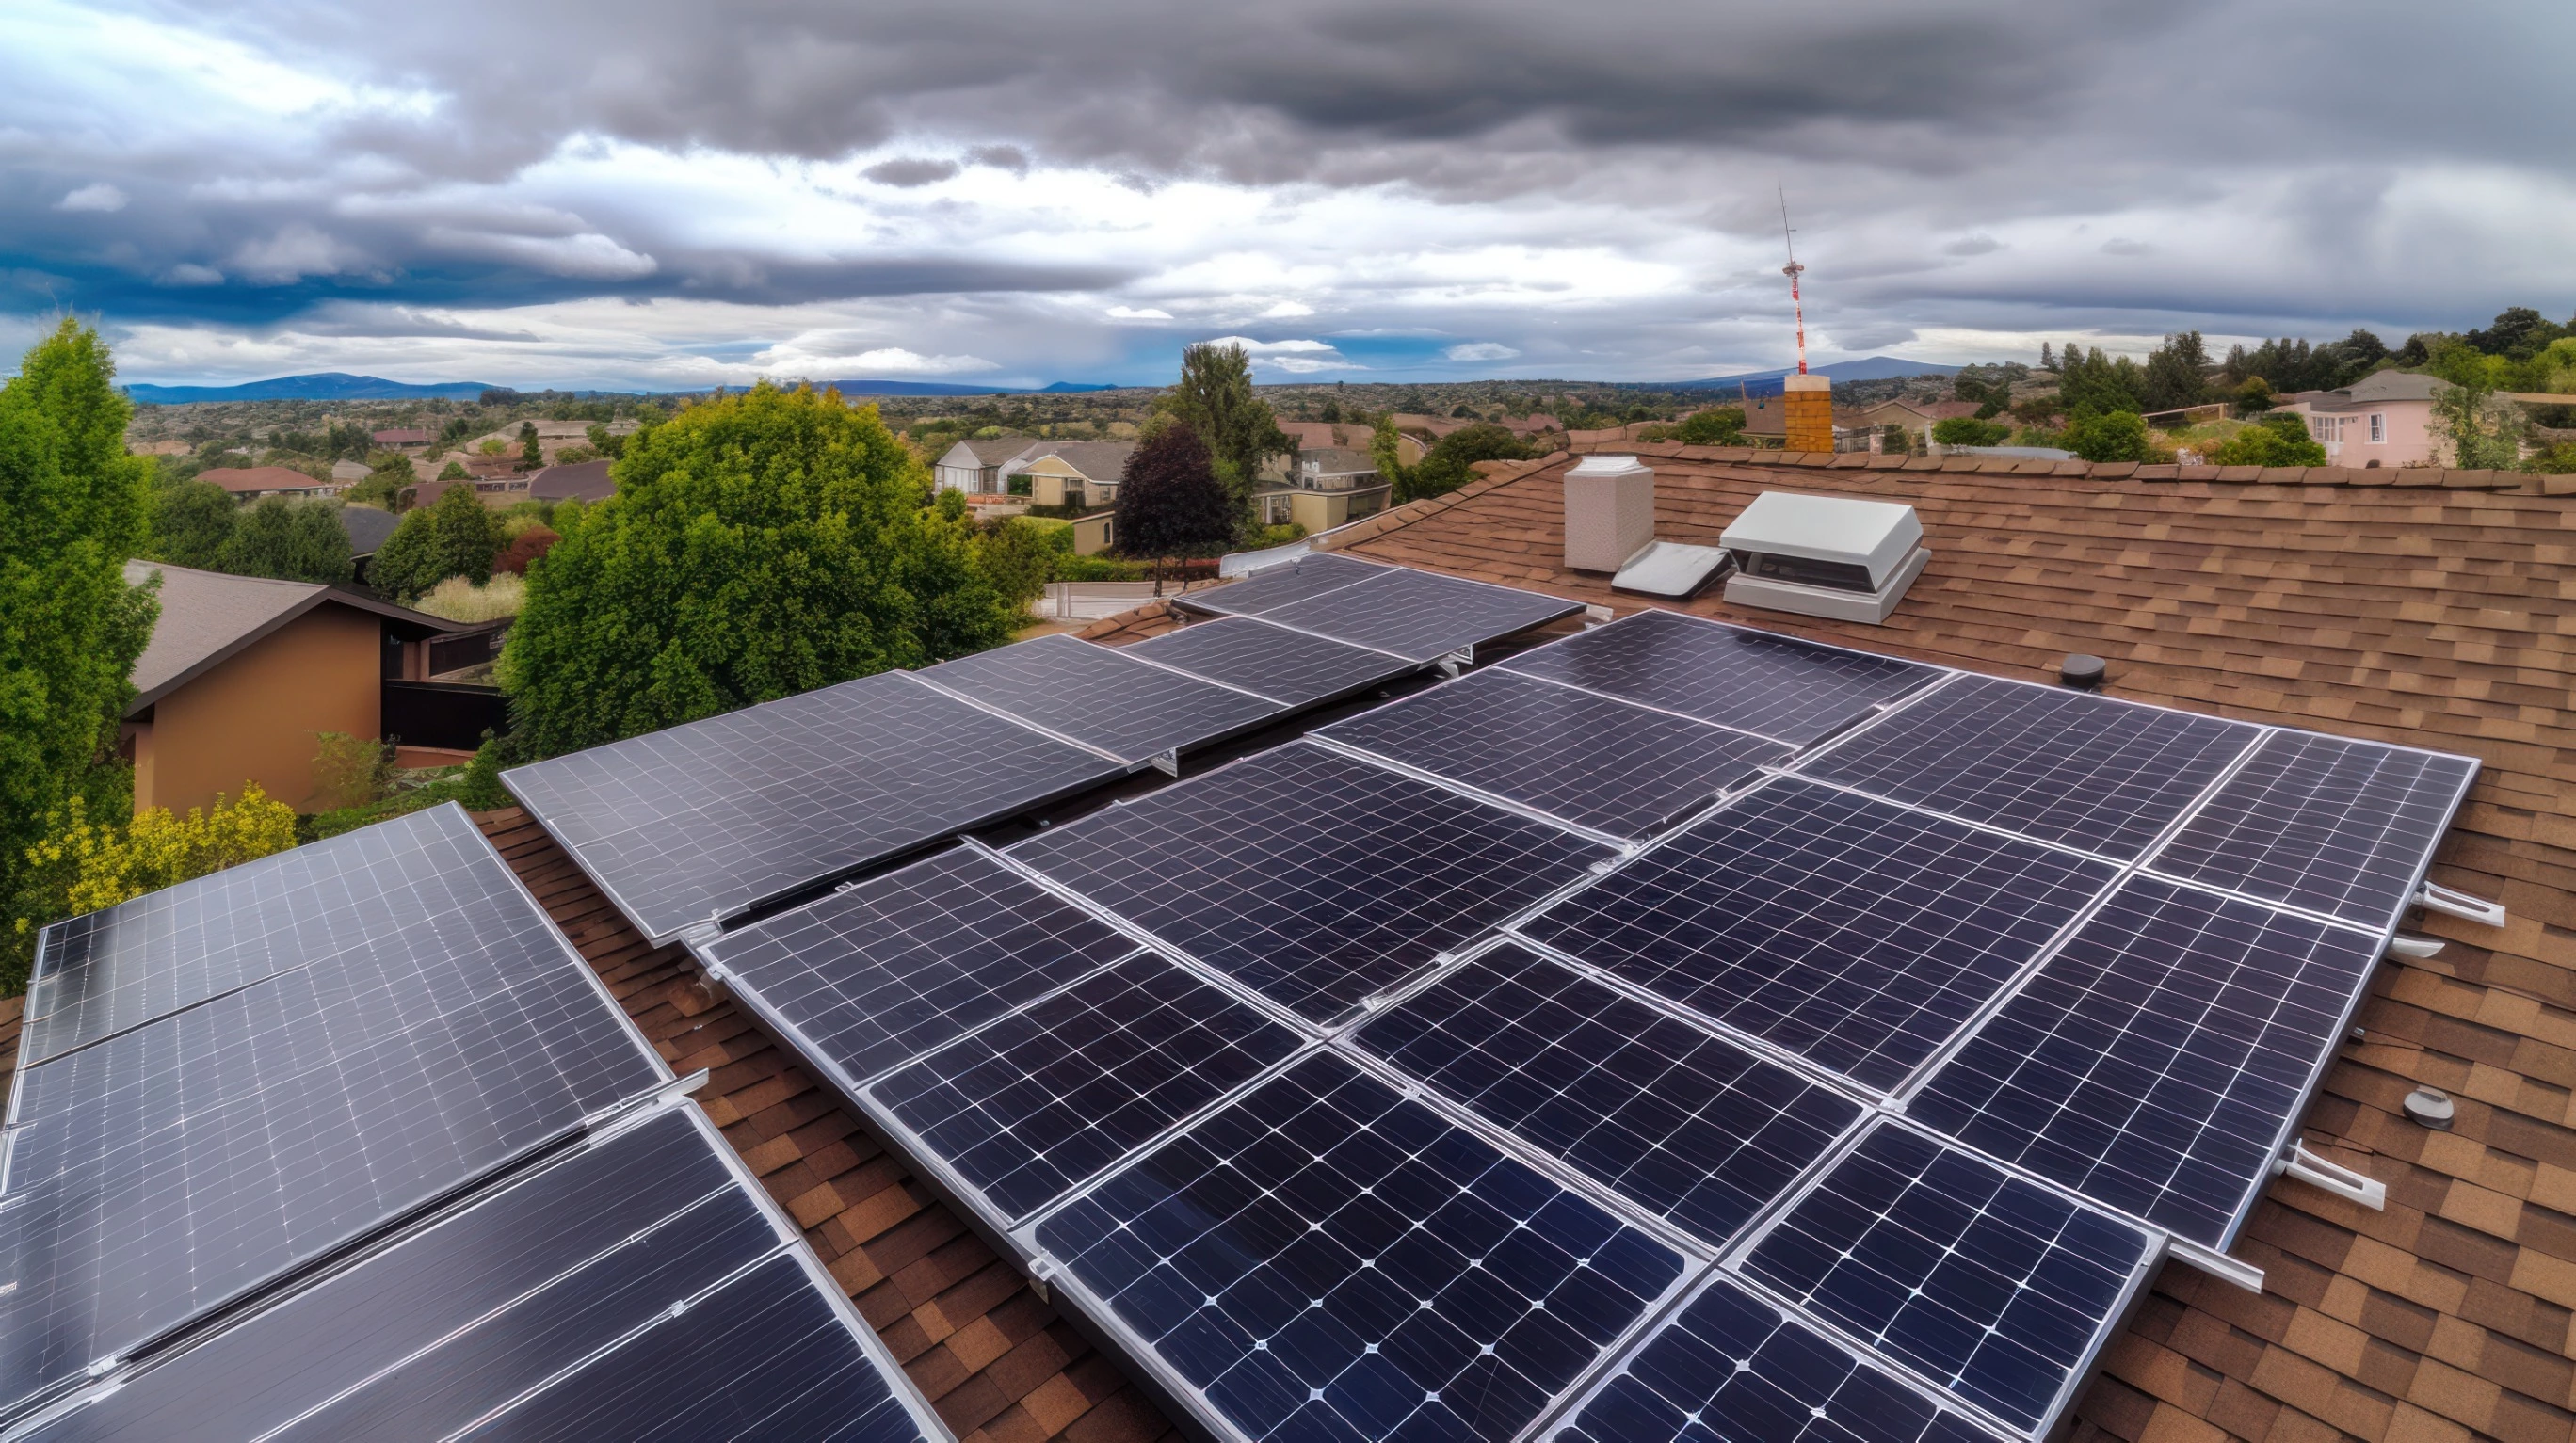 Életre kelt a napelemes piac: akár 5 milliós állami támogatás, de érdemes okosan választani!